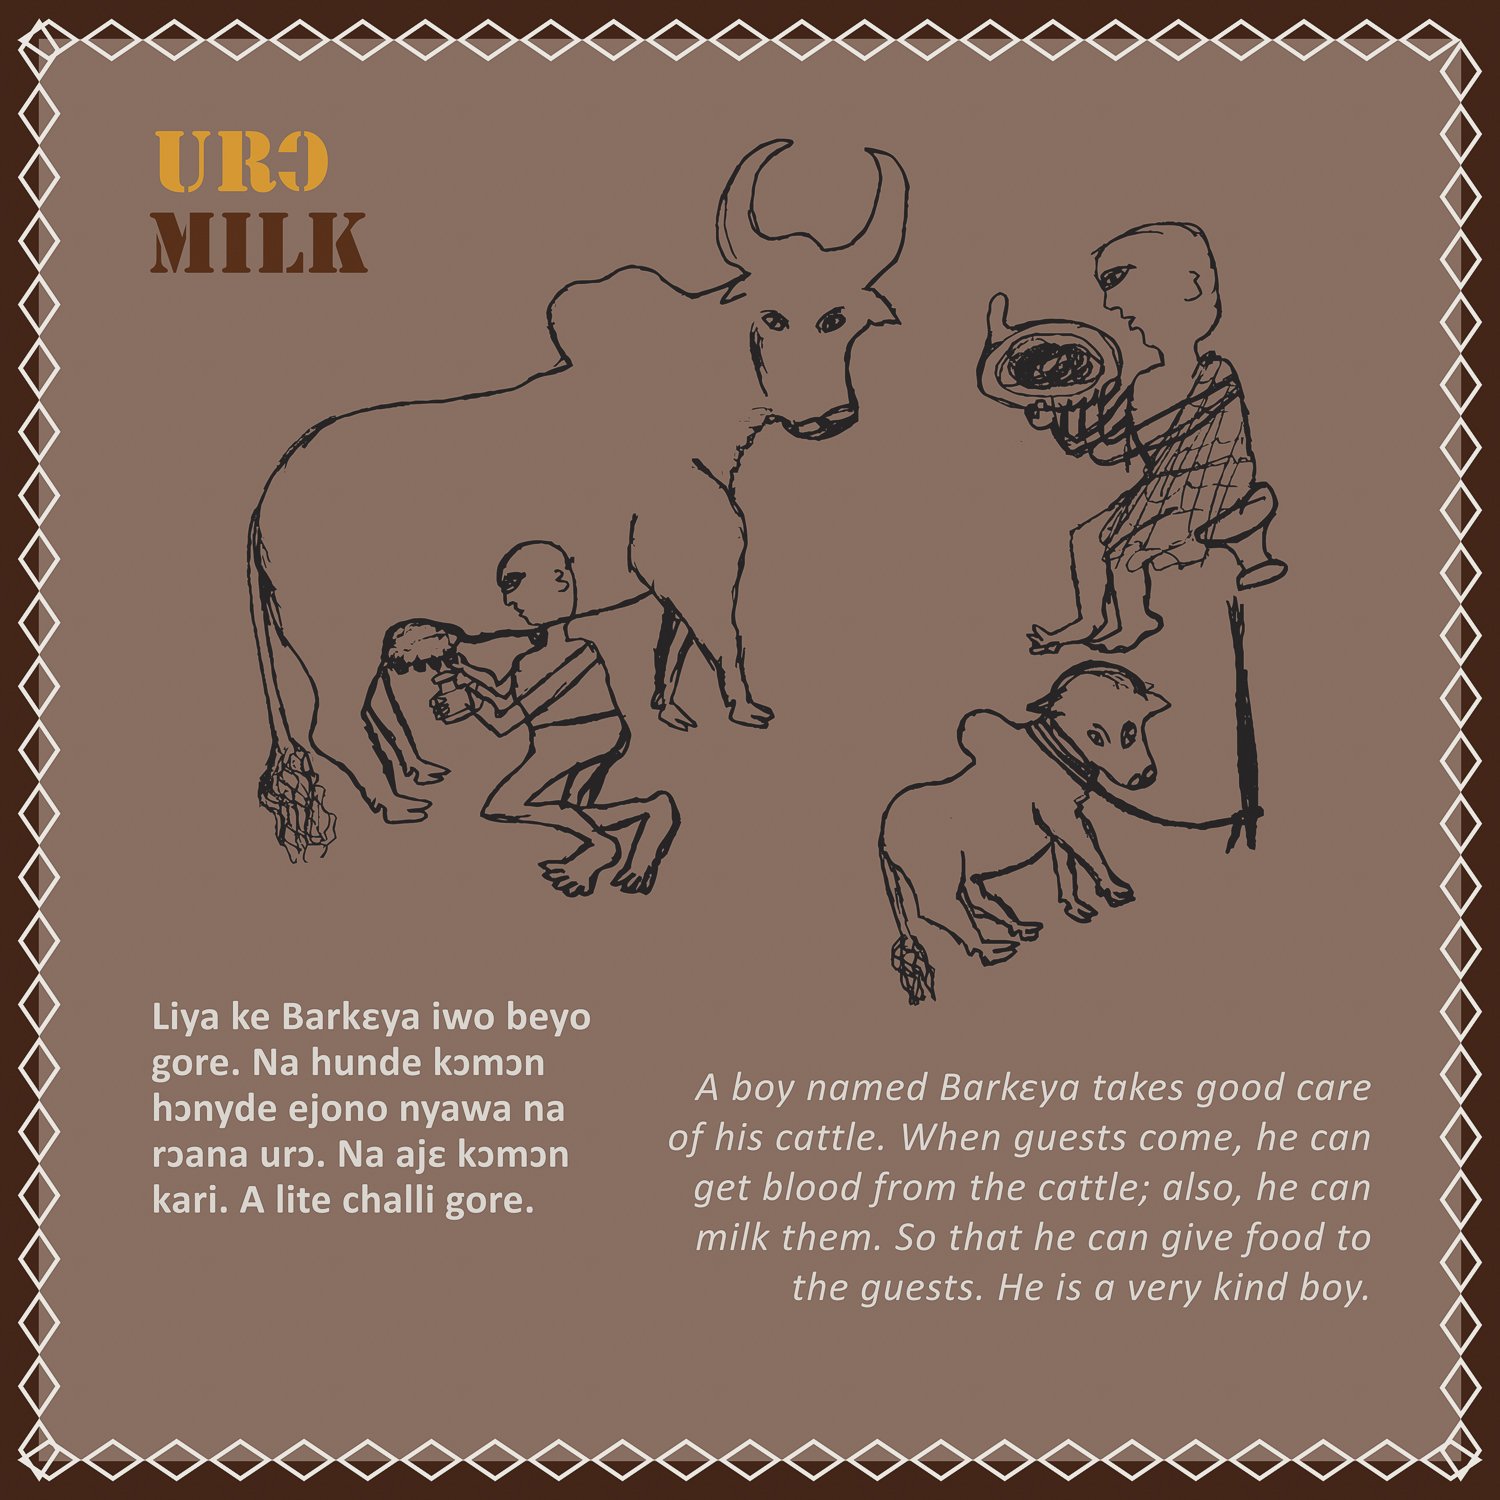 urɔ = milk